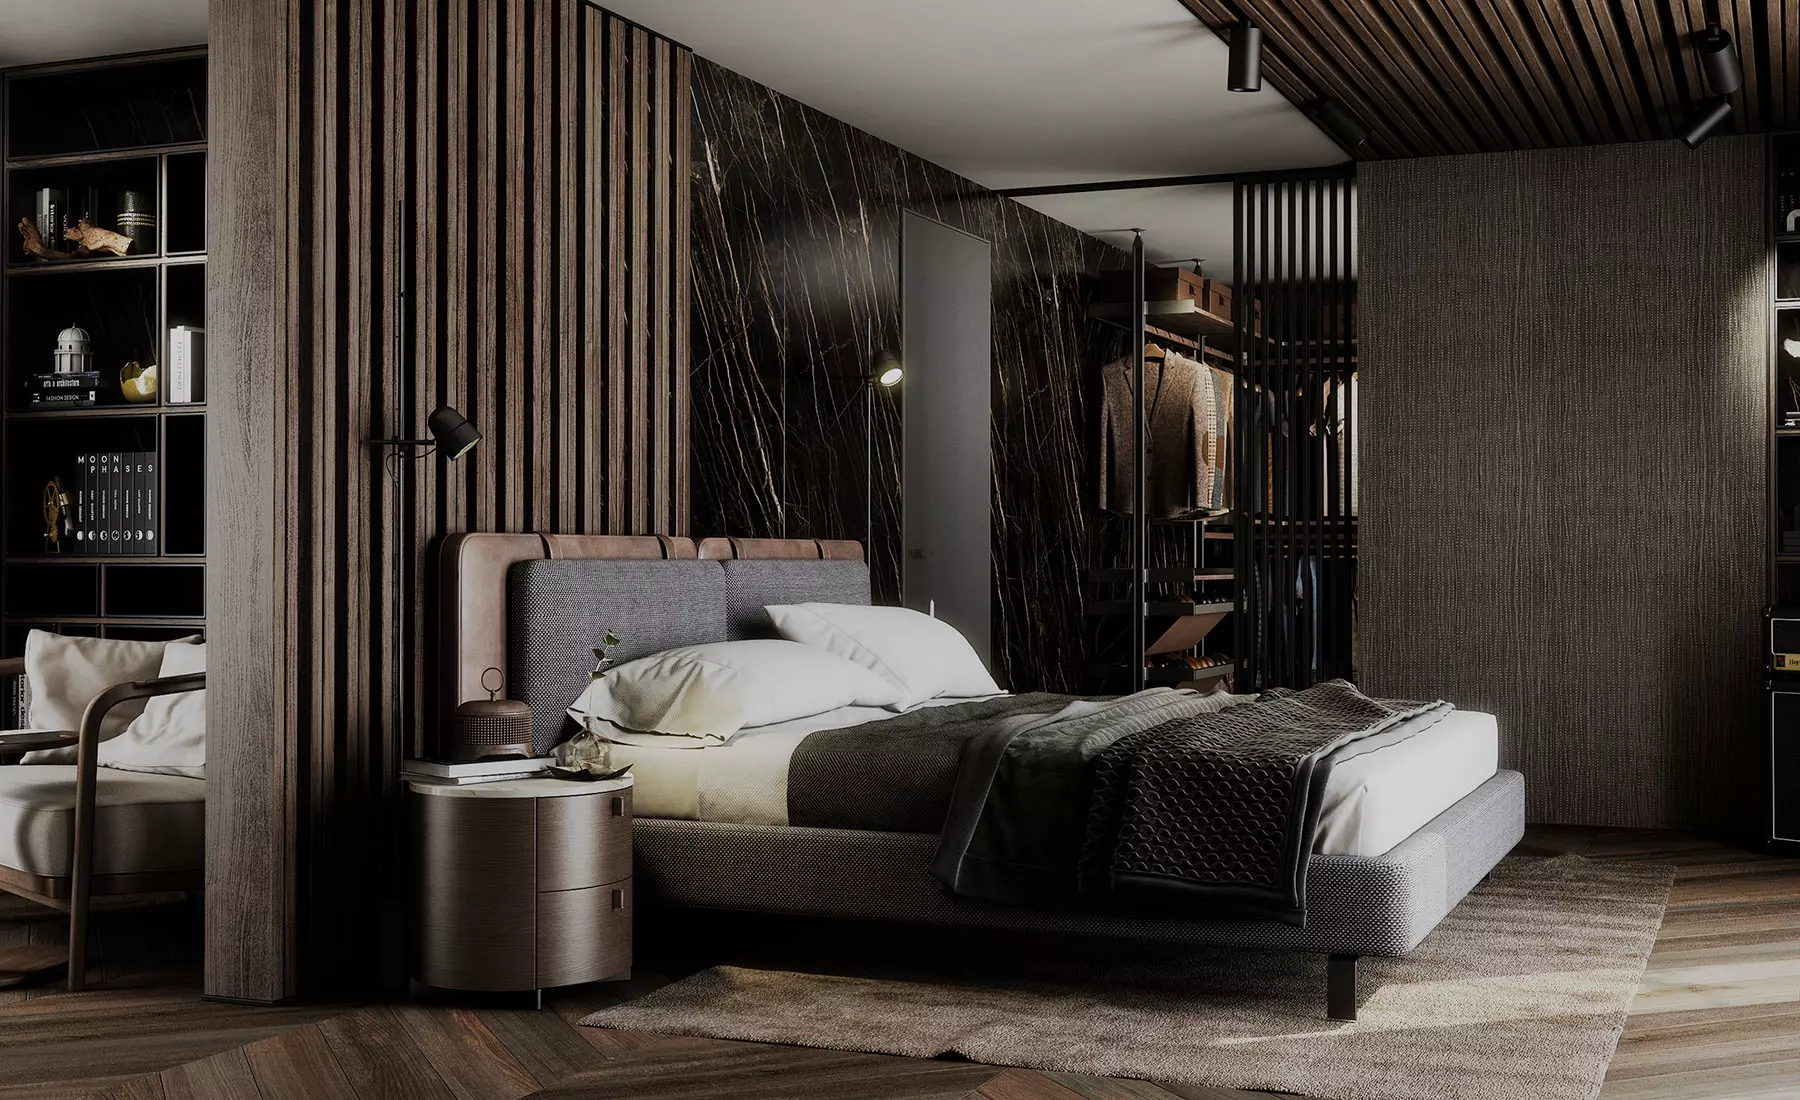 Una habitación con múltiples materiales en suelos y paredes (madera, márcol, tejidos, gres...)